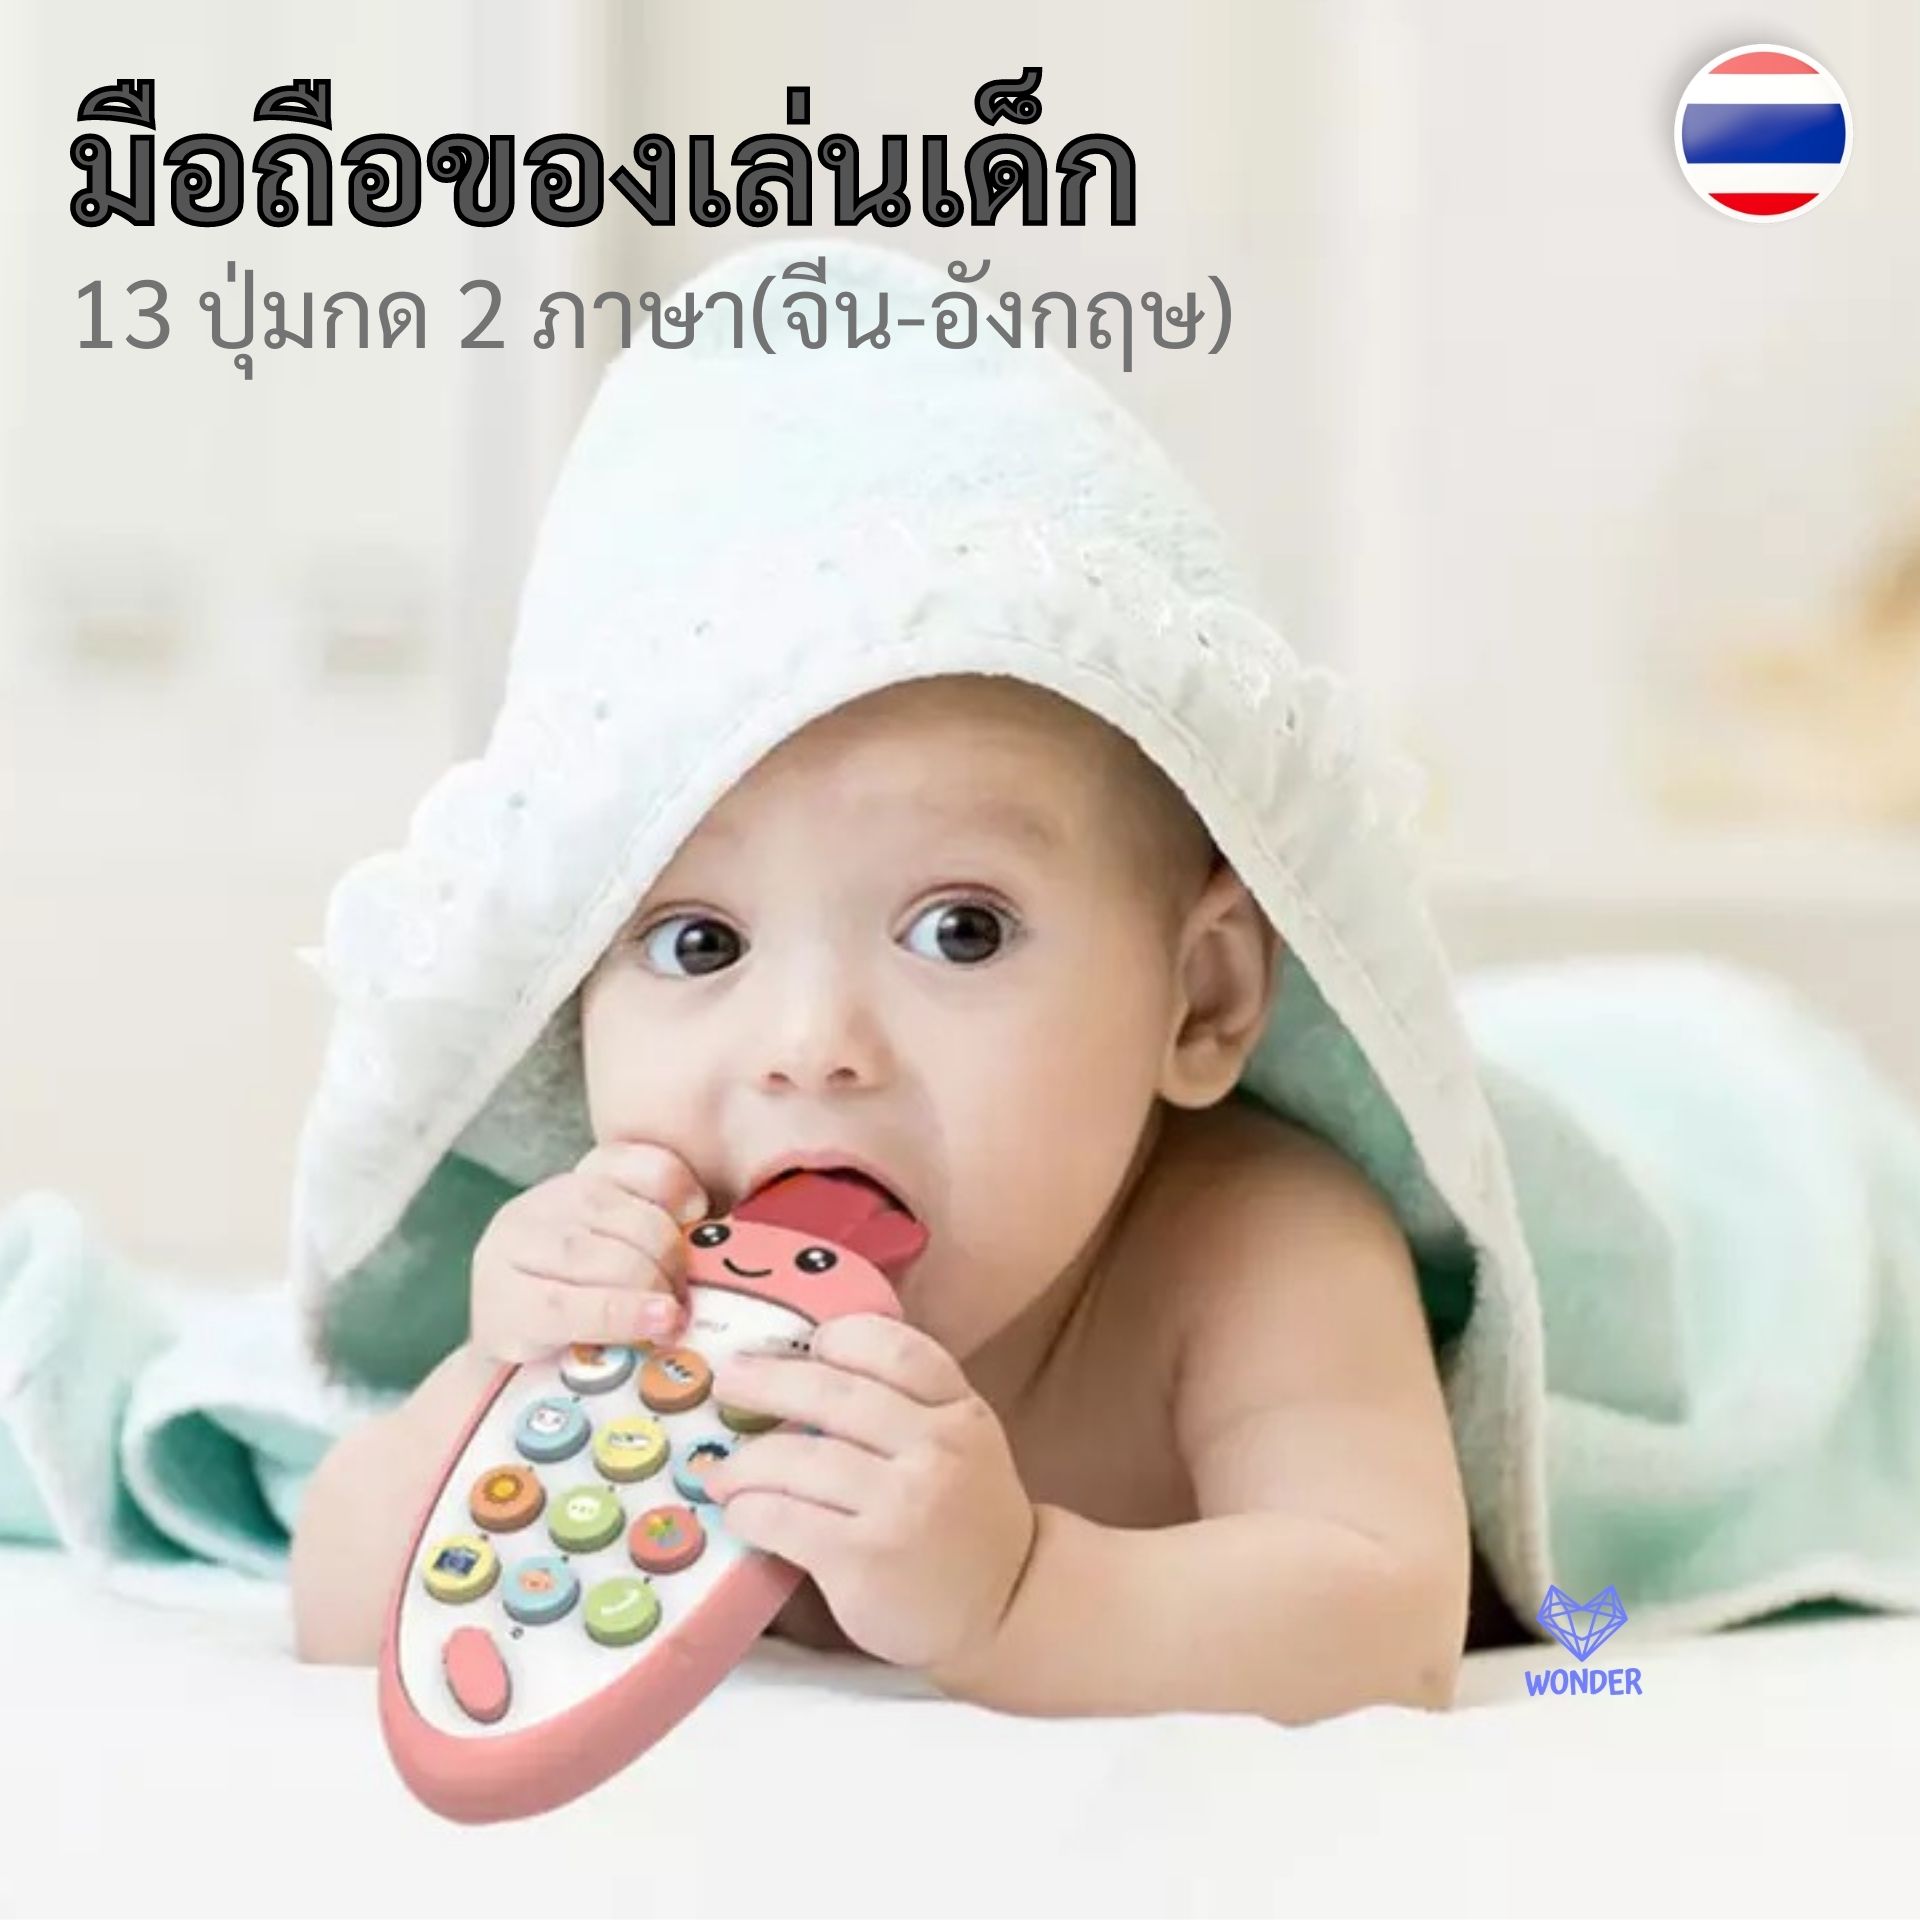 📍มือถือของเล่นเด็ก โทรศัพท์มือถือของเล่นเด็ก (ไม่แถมถ่าน) มีโหมดเรียนรู้ 2 ภาษา จีน-อังกฤษ โทรศัพท์เด็ก ของเล่นเด็ก Baby toy W164